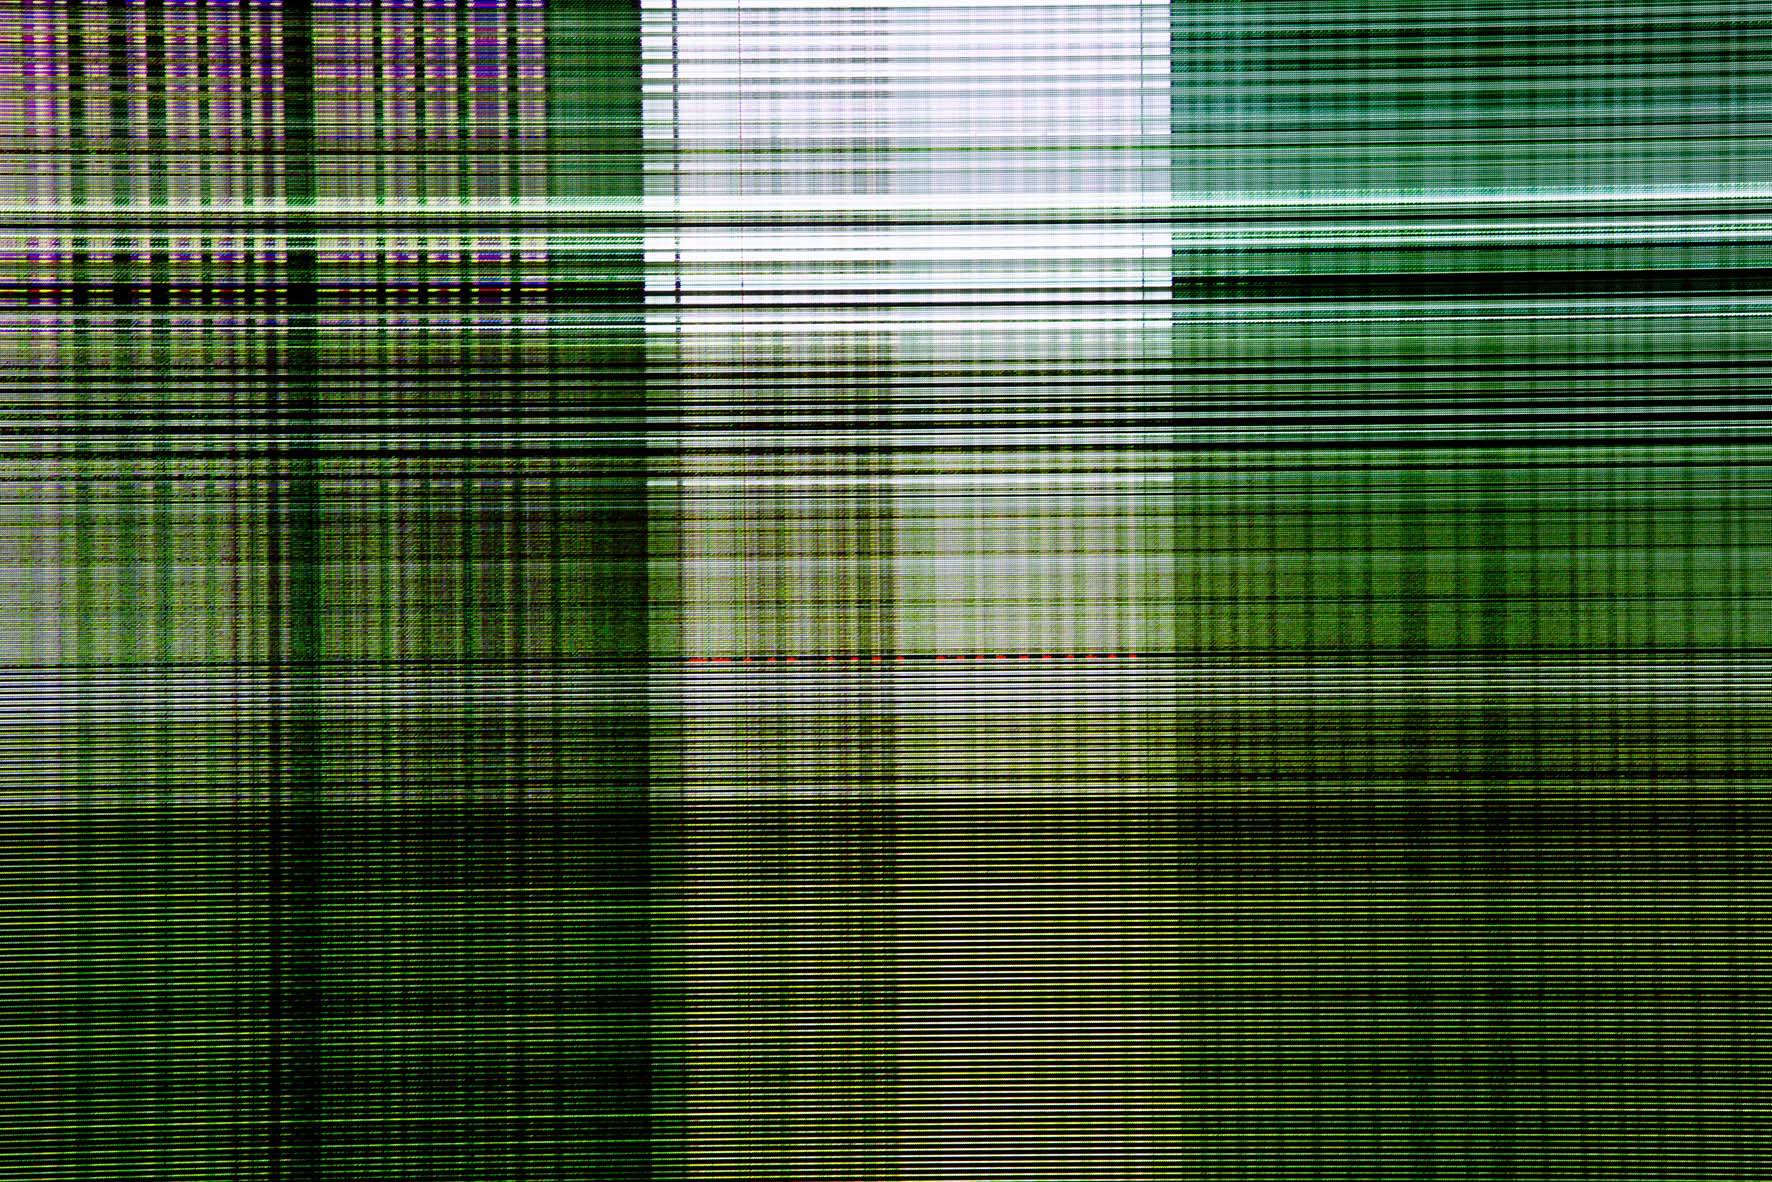 Des lignes verticales et horizontales de différentes largeurs, vertes, bleues, violettes et noires, se croisent à la manière d'un tissu écossais